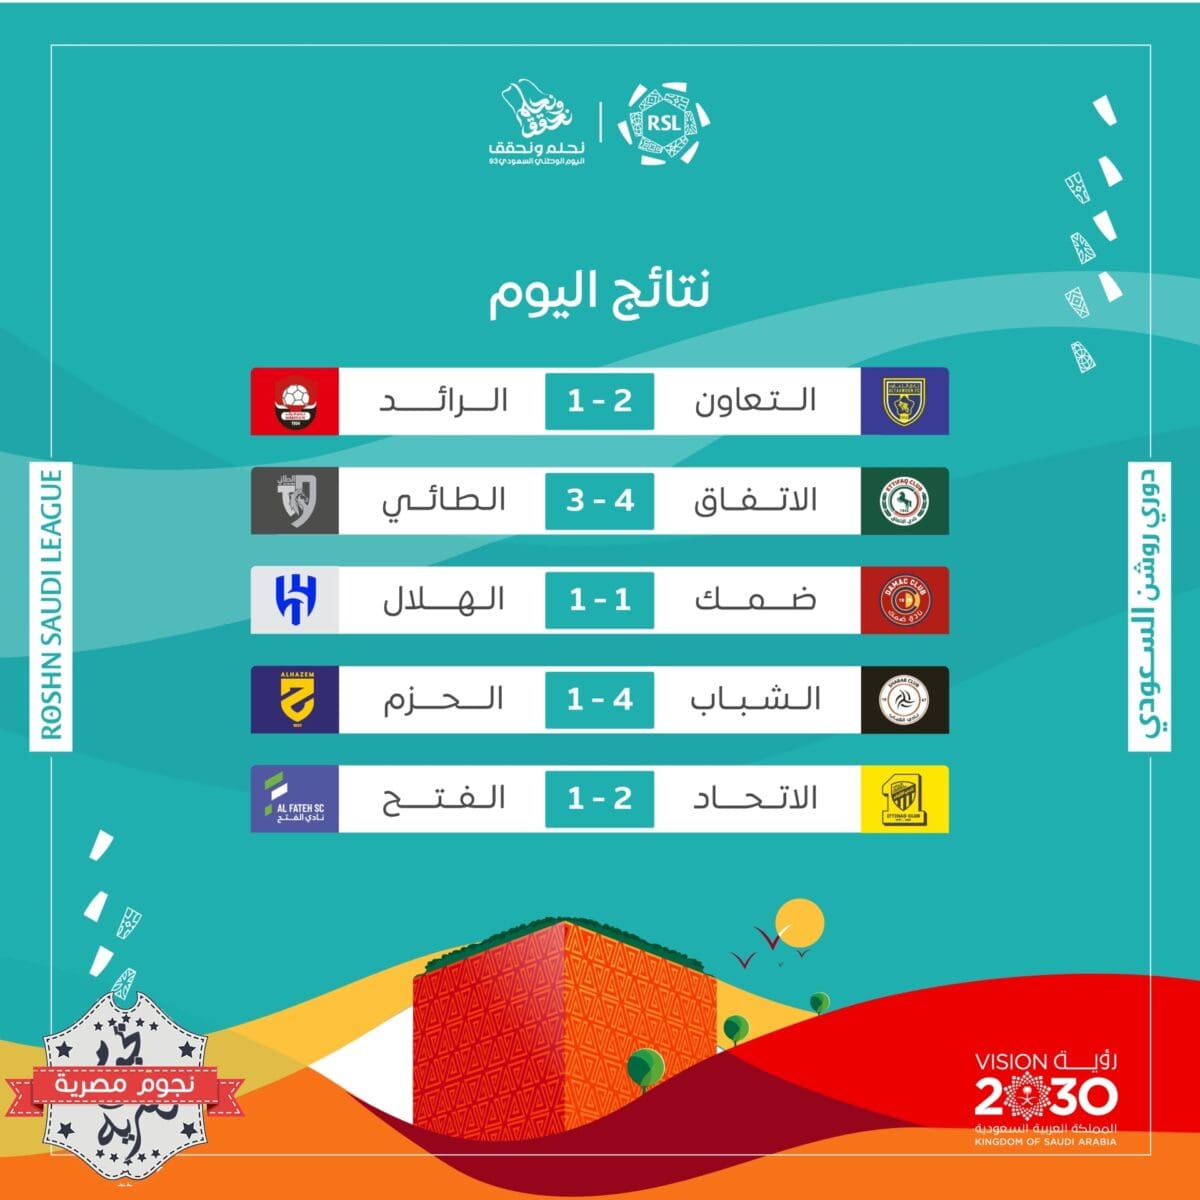 نتائج مباريات اليوم الأول (الخميس) في الجولة السابعة من دوري روشن السعودي (مصدر الصورة. حساب البطولة في موقع إكس)